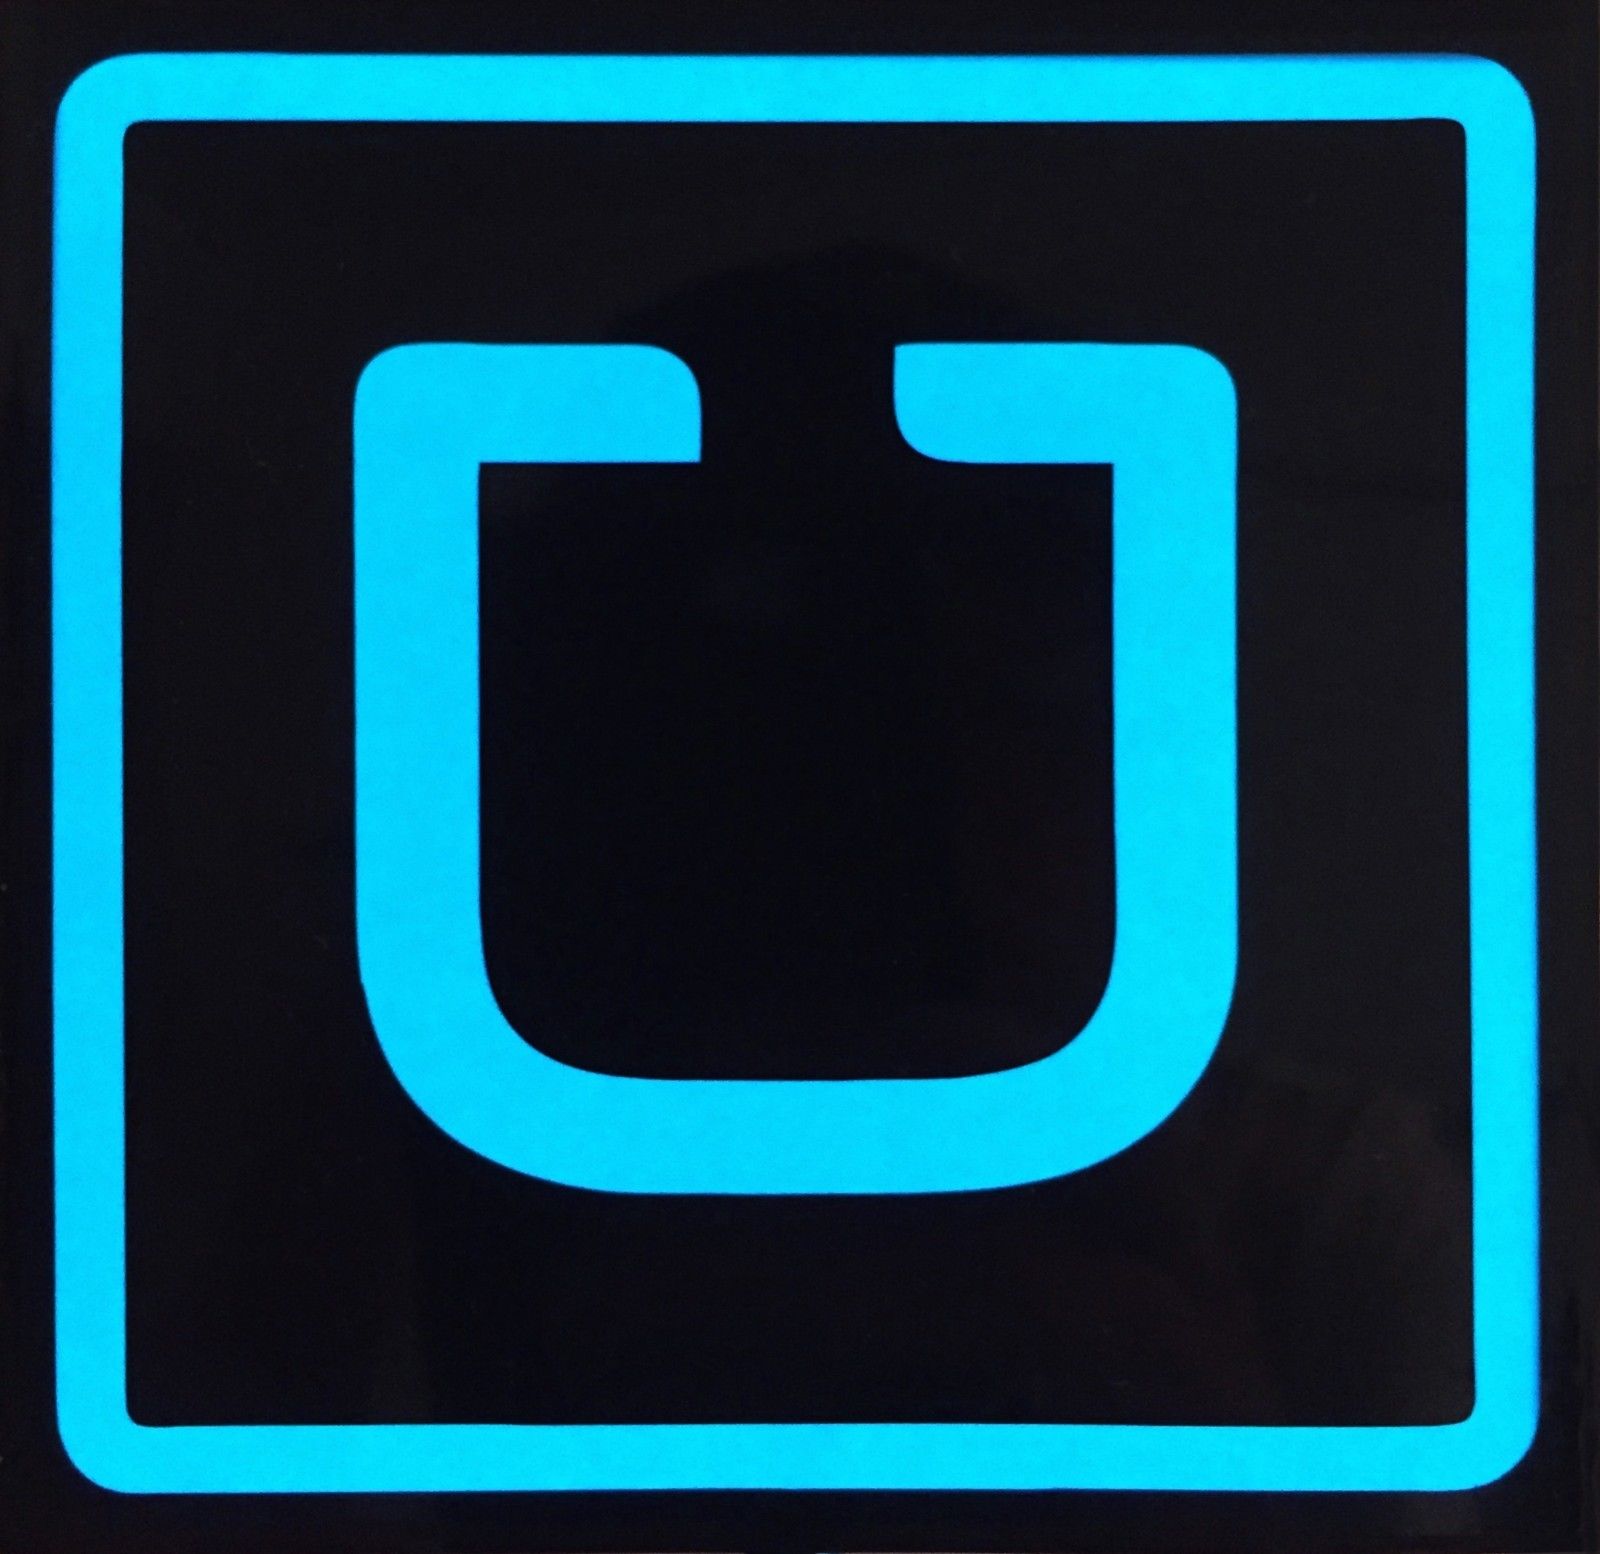 Template Free Printable Uber Signs Printable Templates